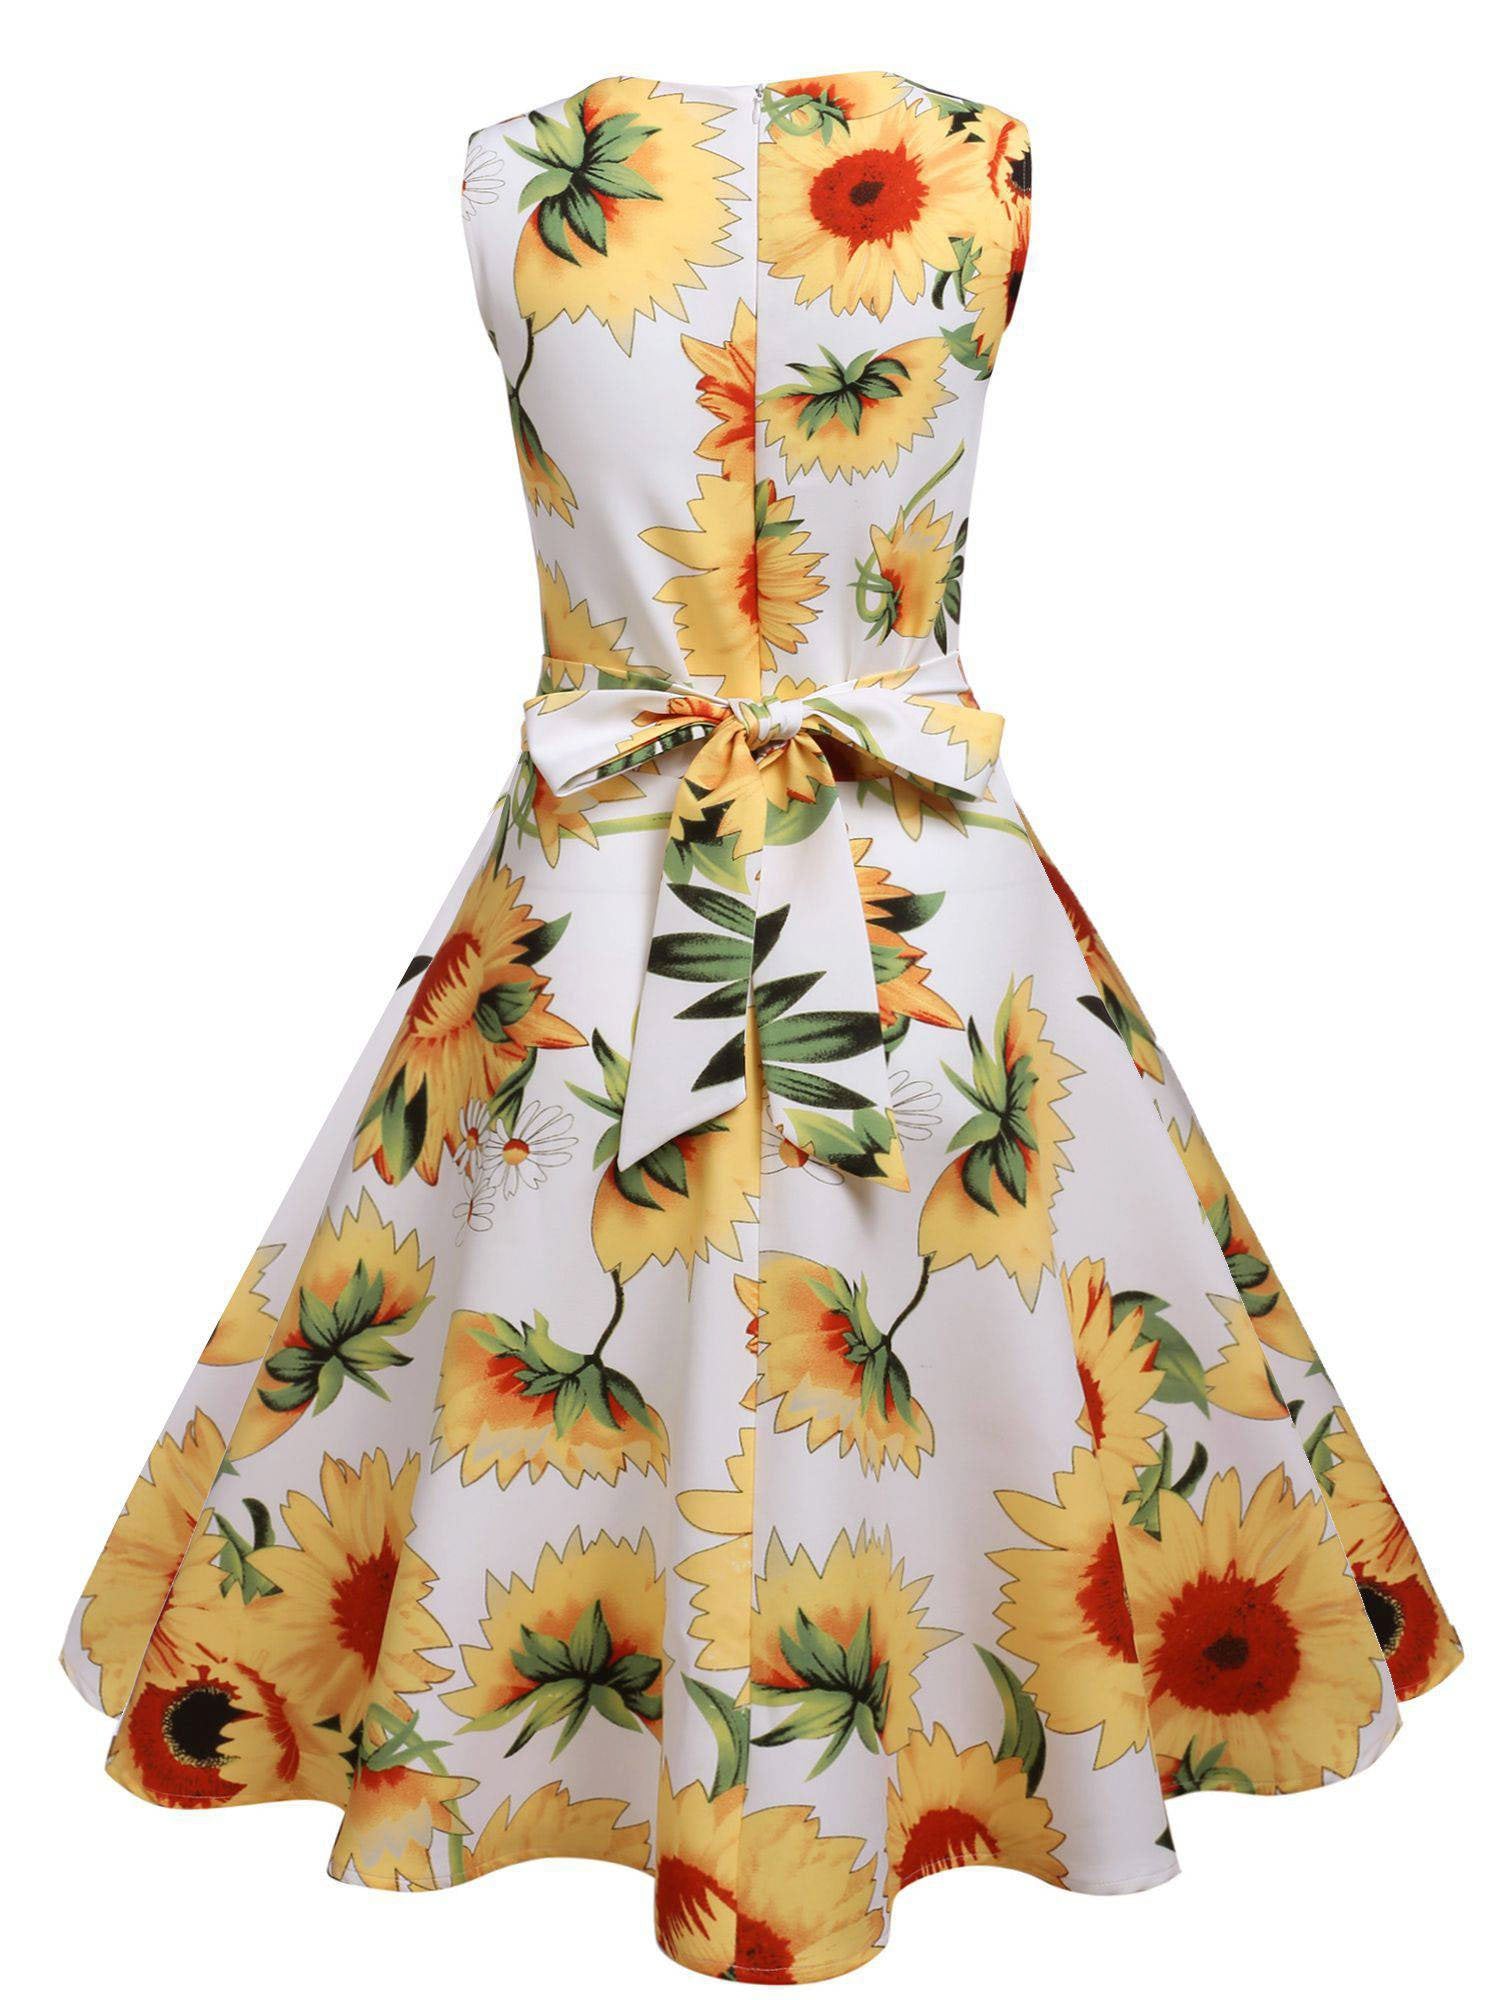 Yellow And White 1950s Sunflowers Dress